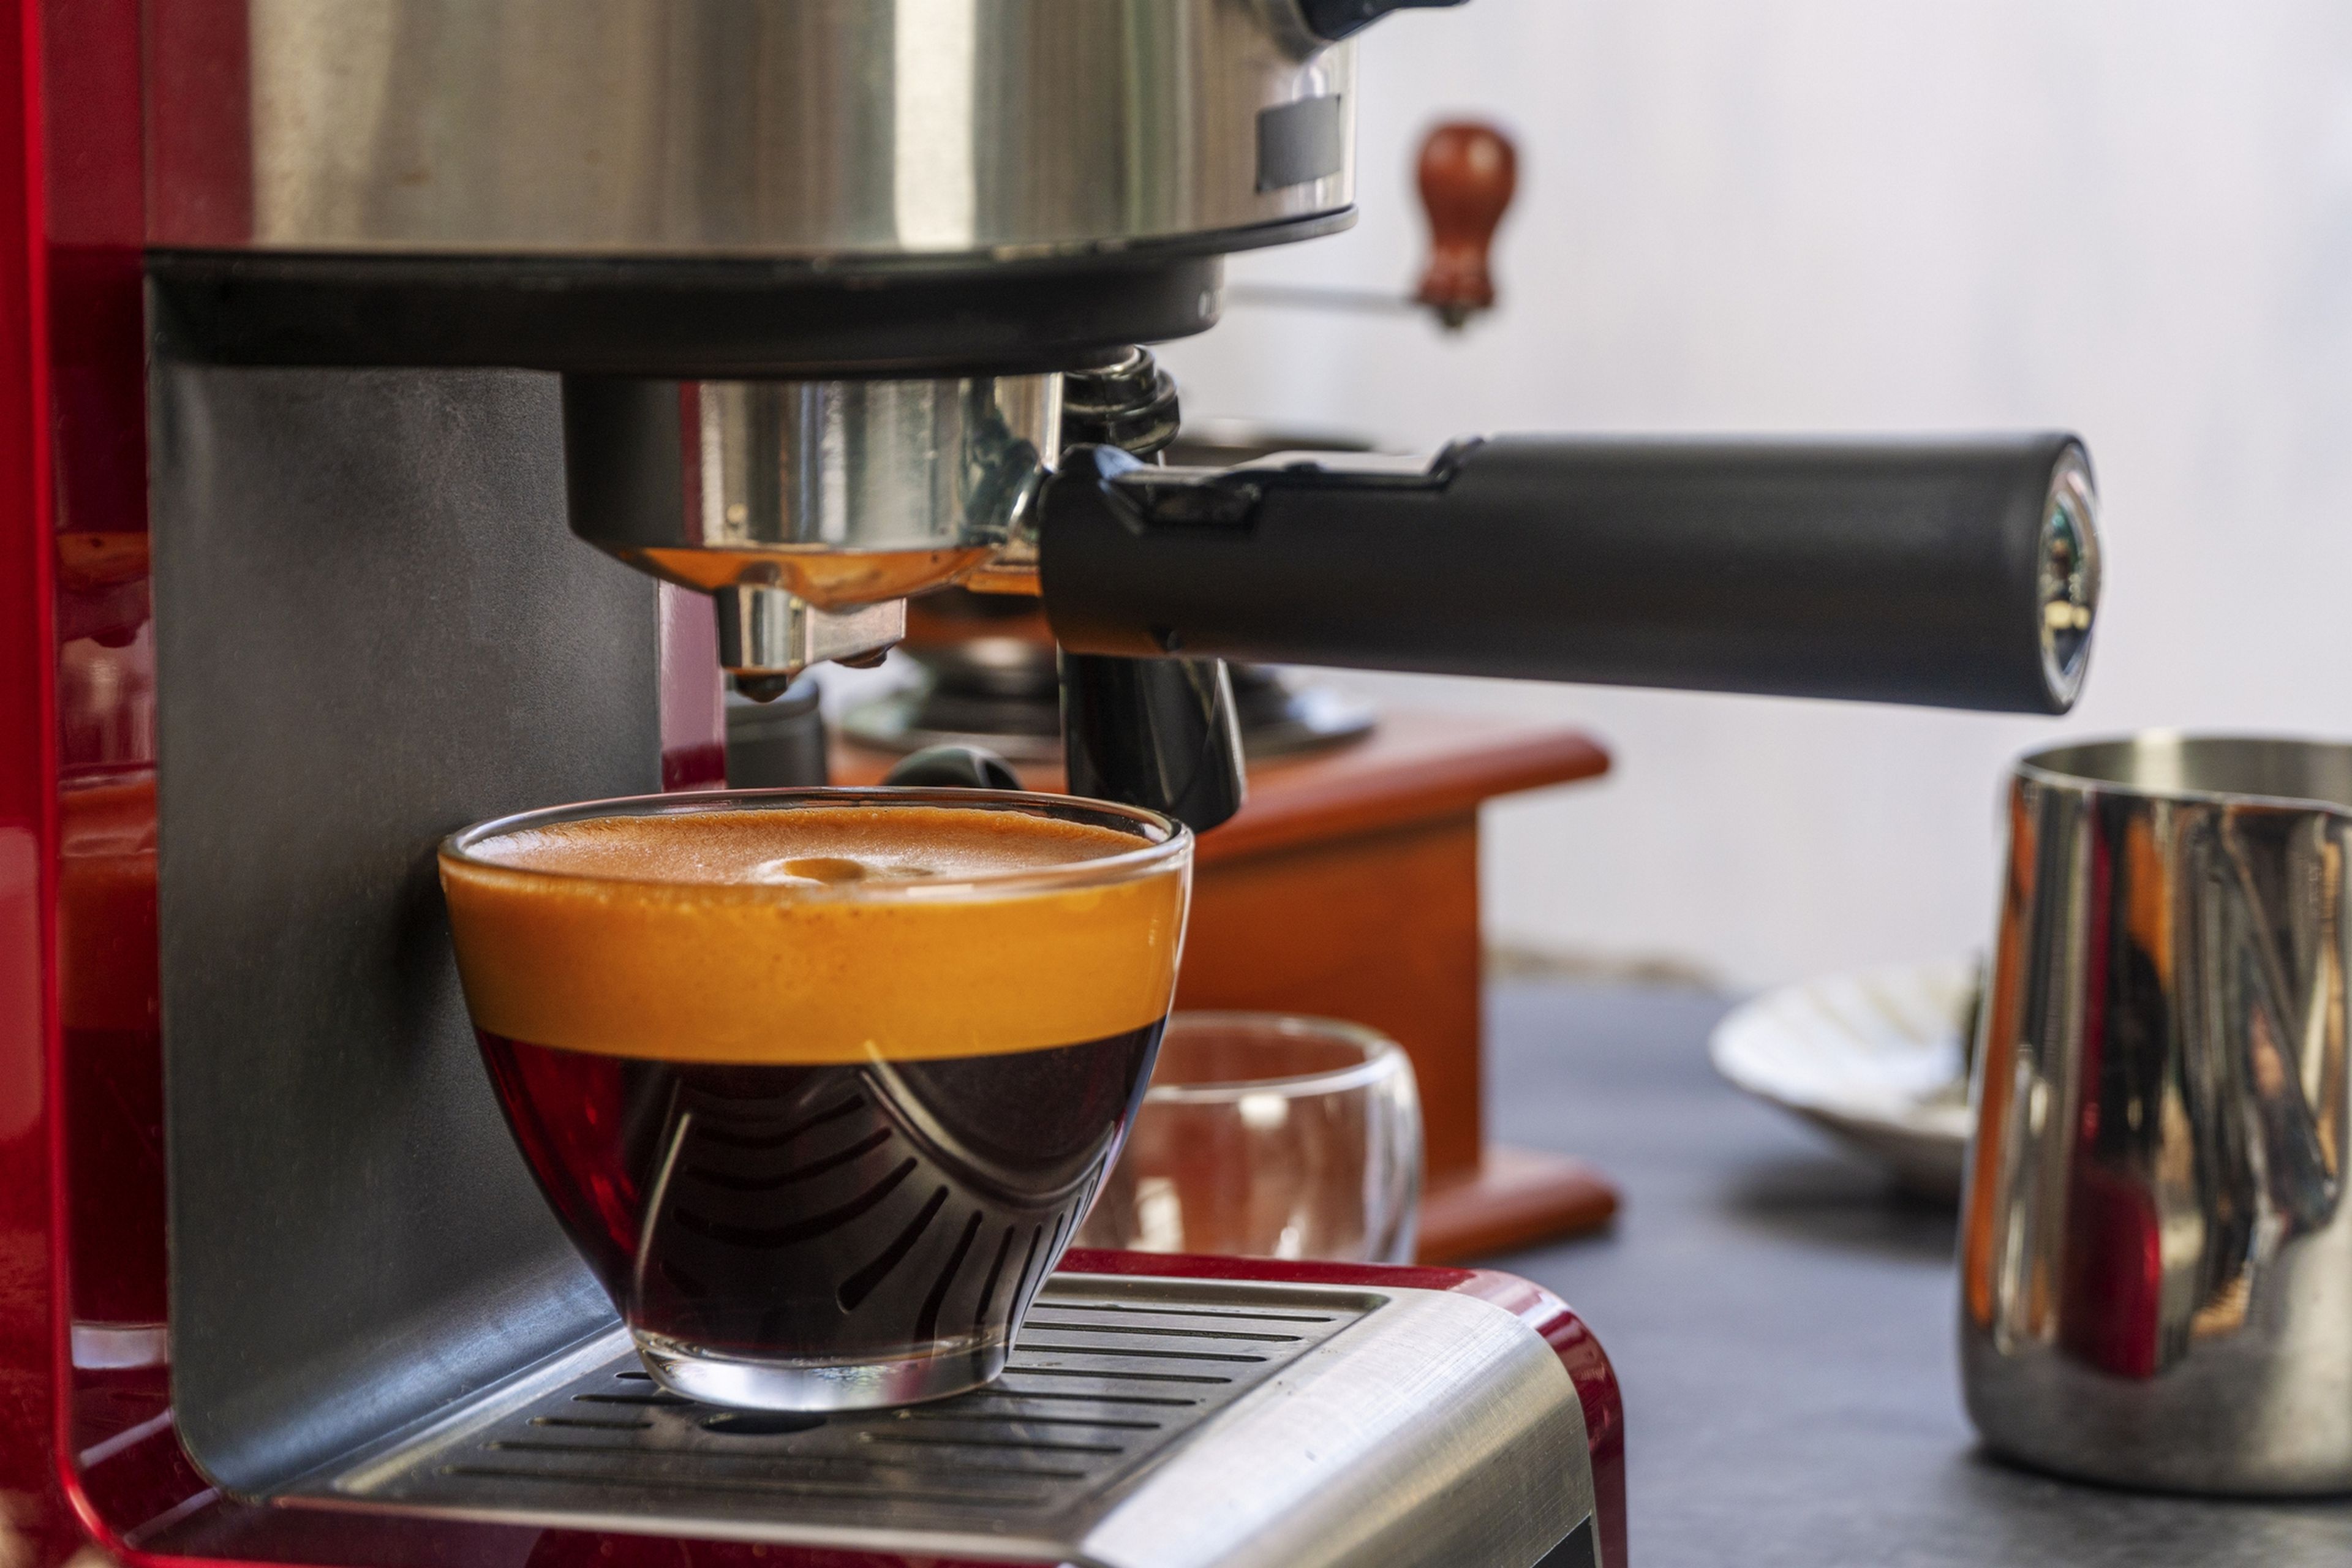 Cafeteras express manual, semiautomáticas y superautomática: diferencias y cuál es la mejor para ti